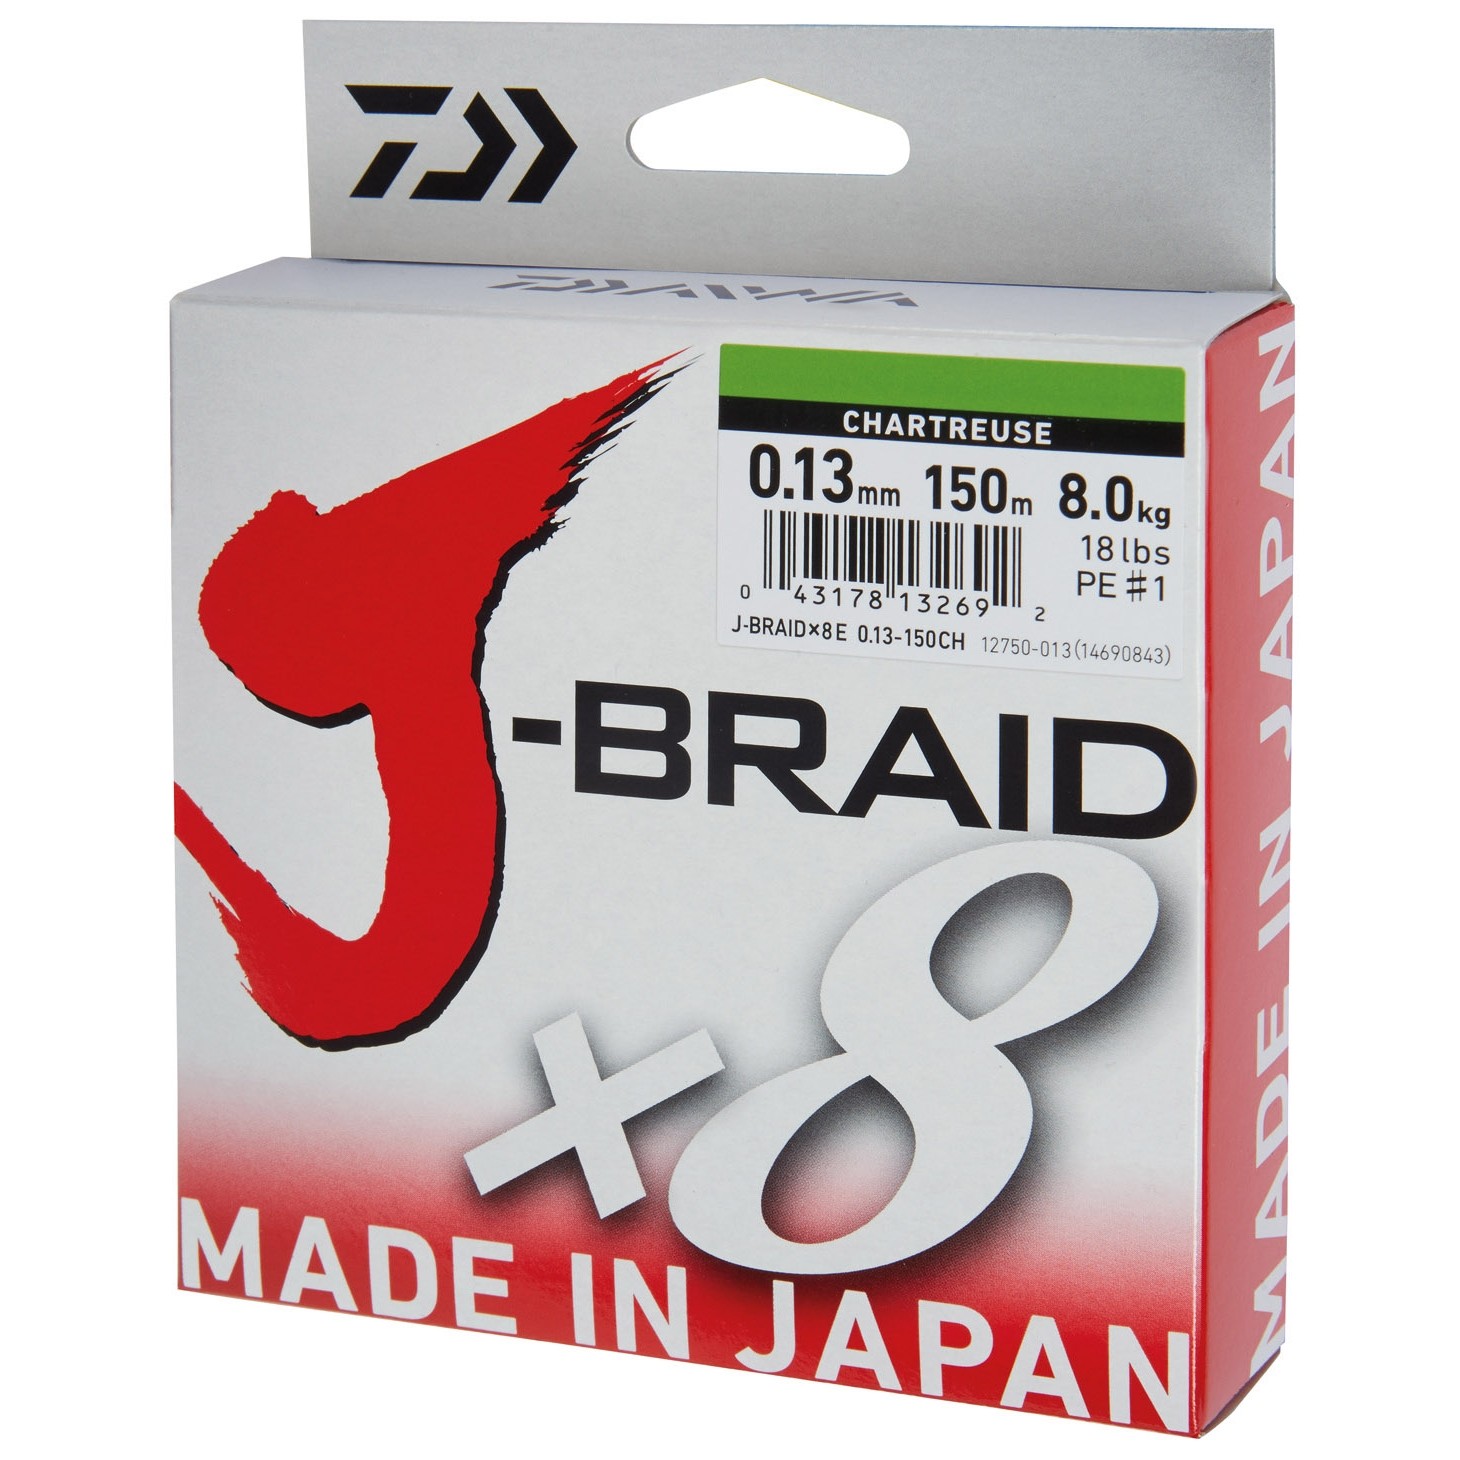 FIR DAIWA J-BRAID X8 CHARTREUSE 006MM/4,0KG/150M - D.12750.006